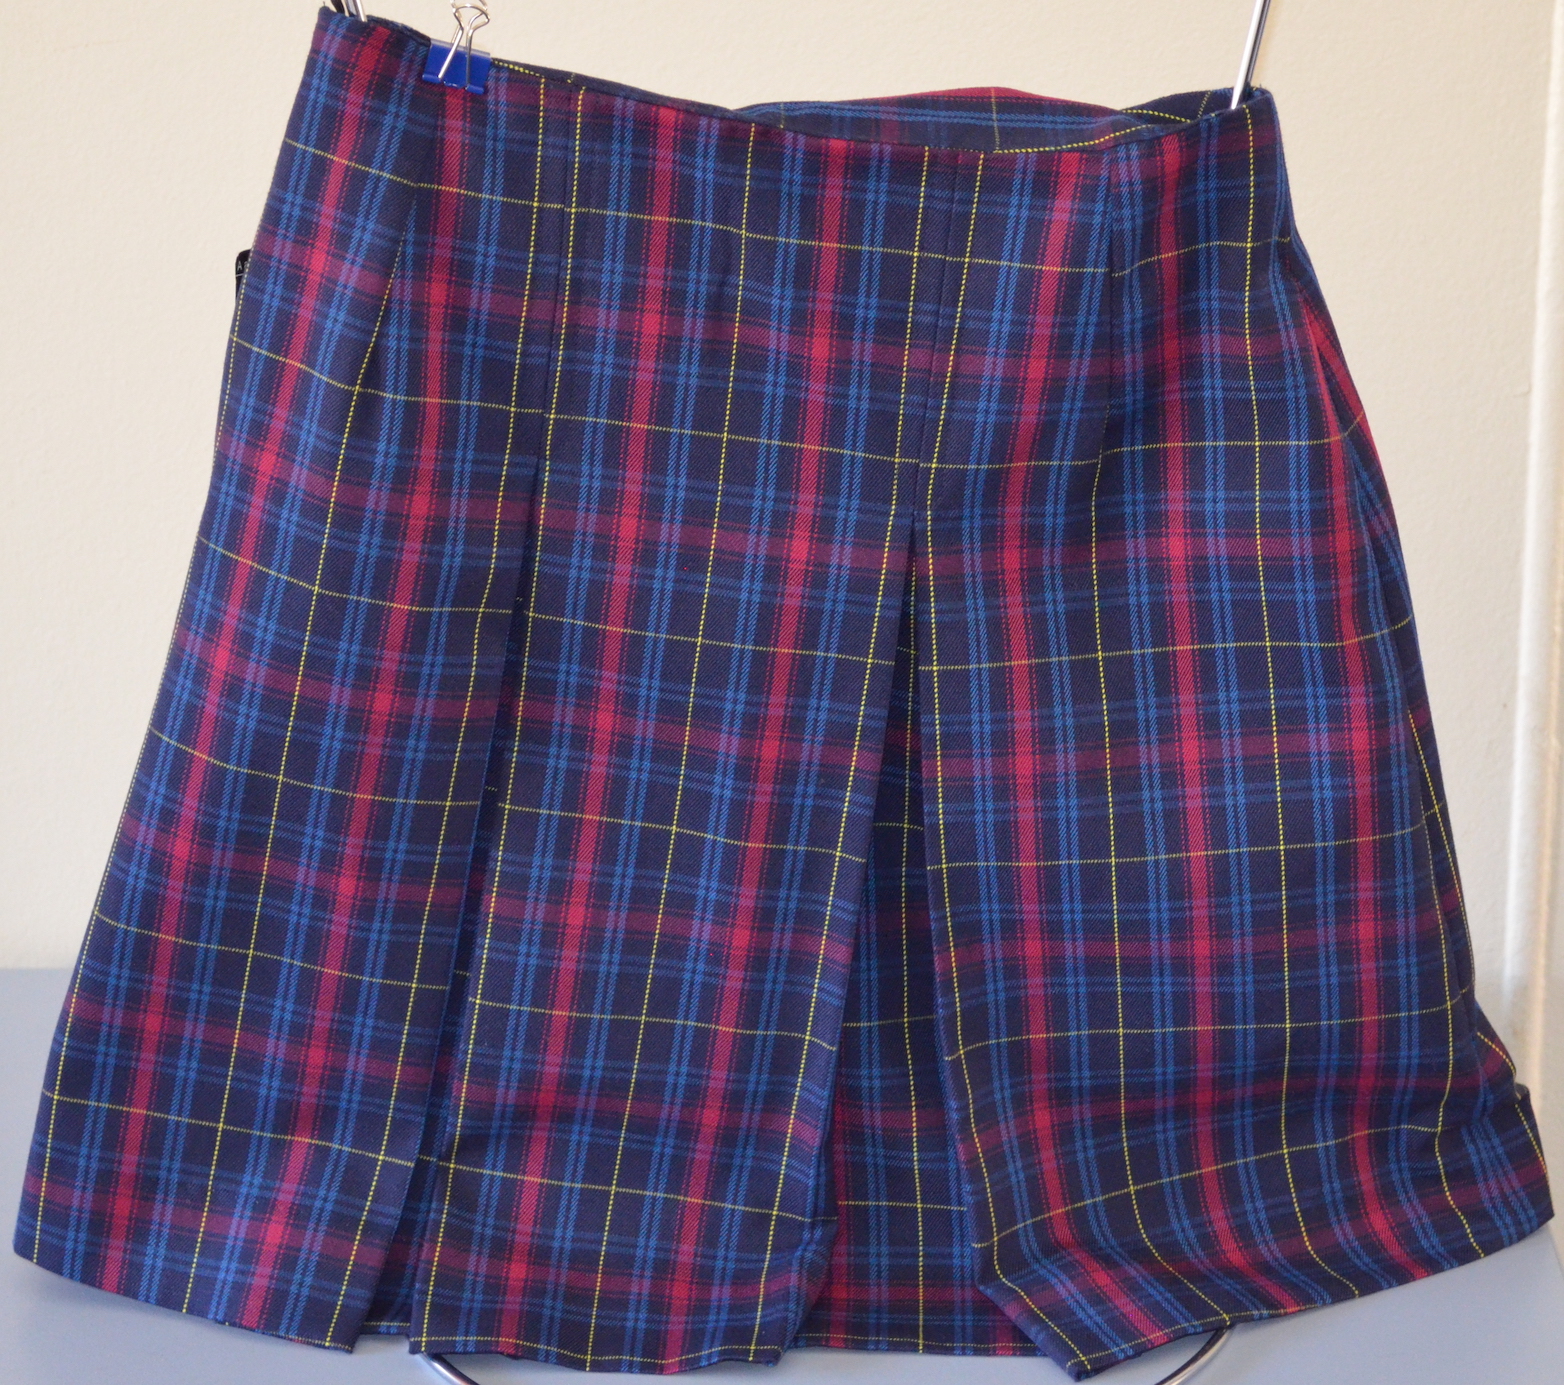 Senior Pleated Check skirt.